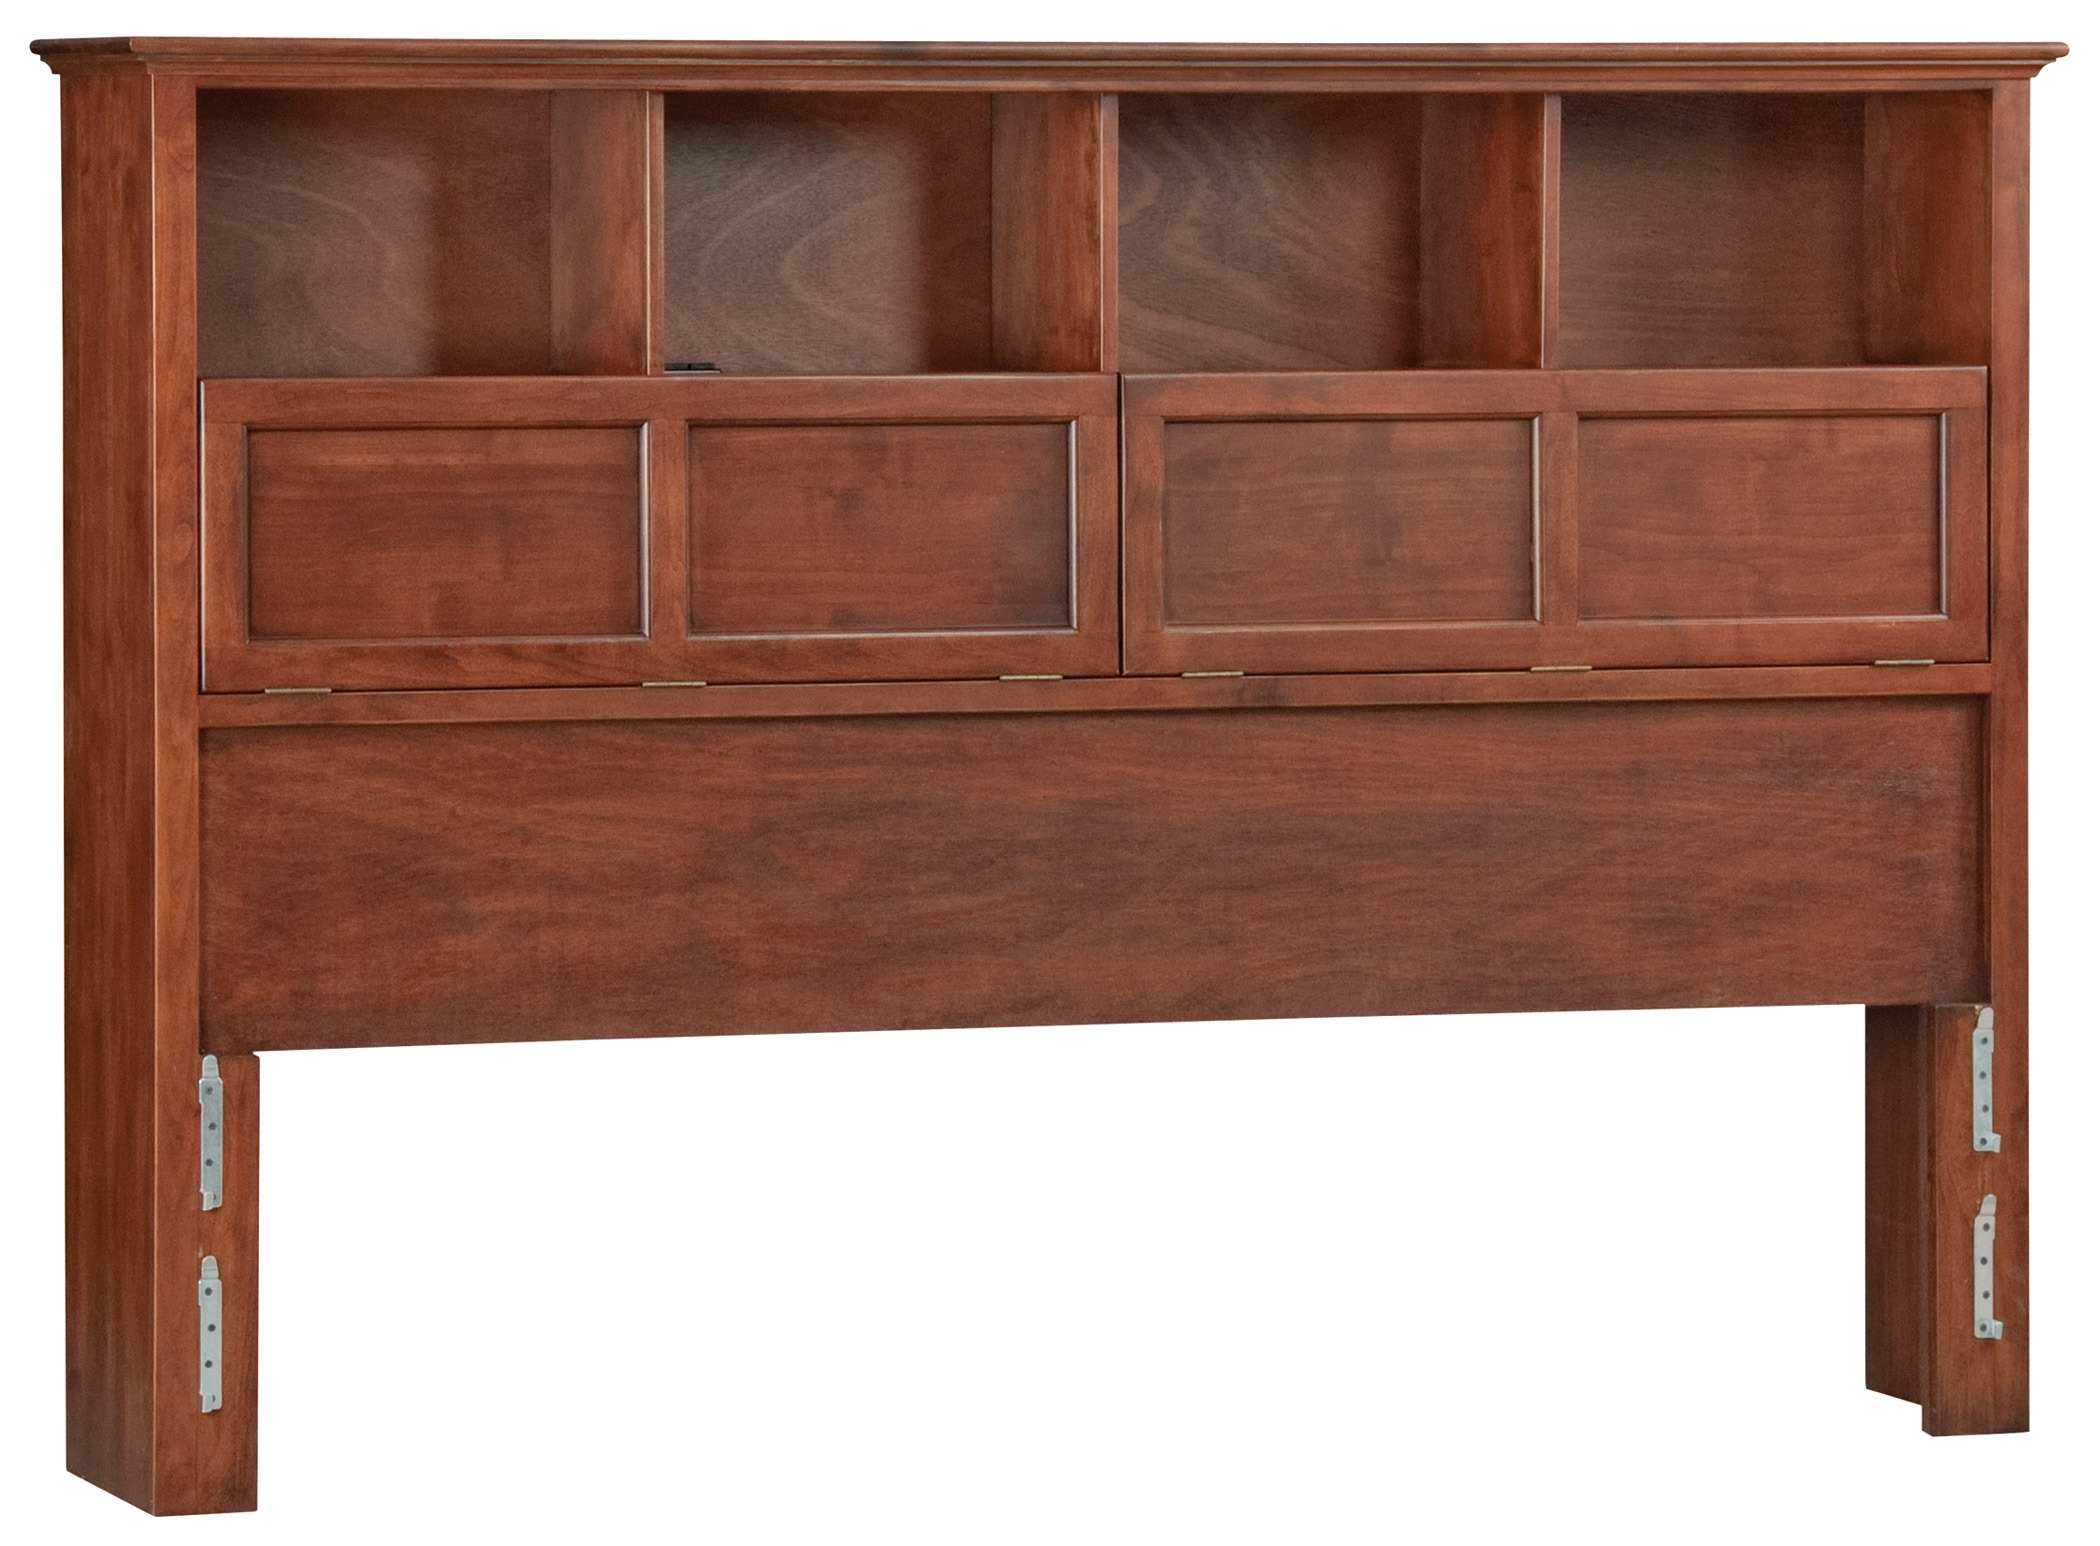 Mckenzie king bookcase headboard by whittier wood